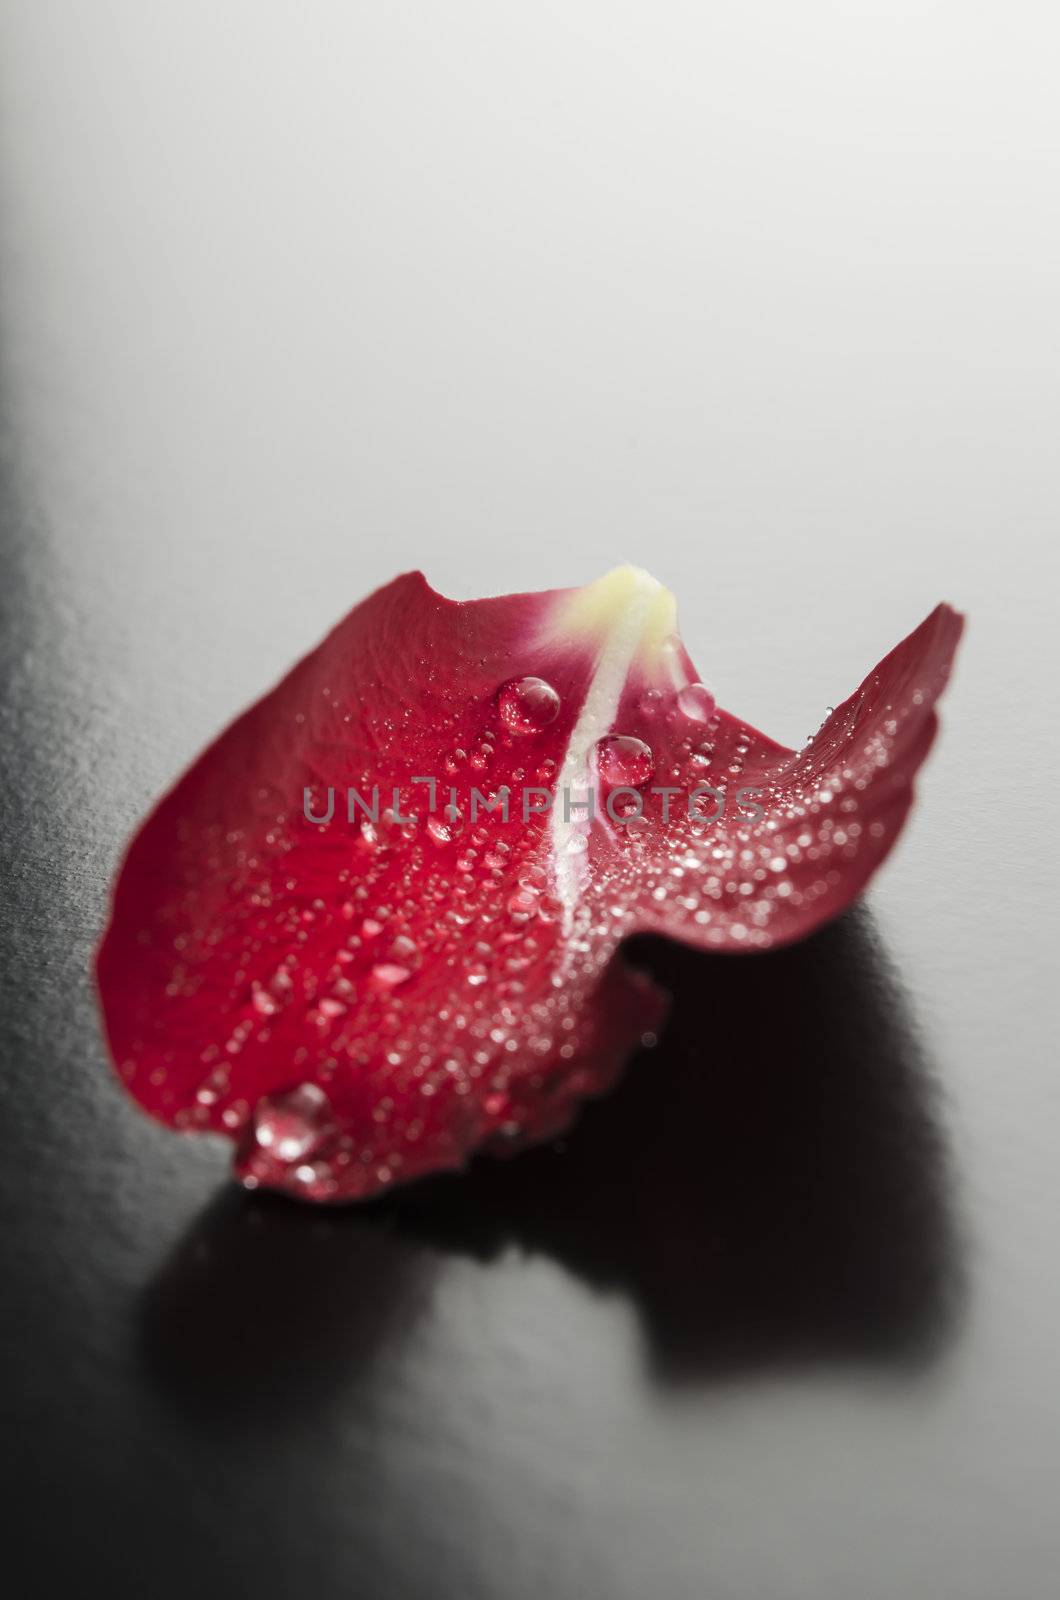 Rose petal closeup by Gajus